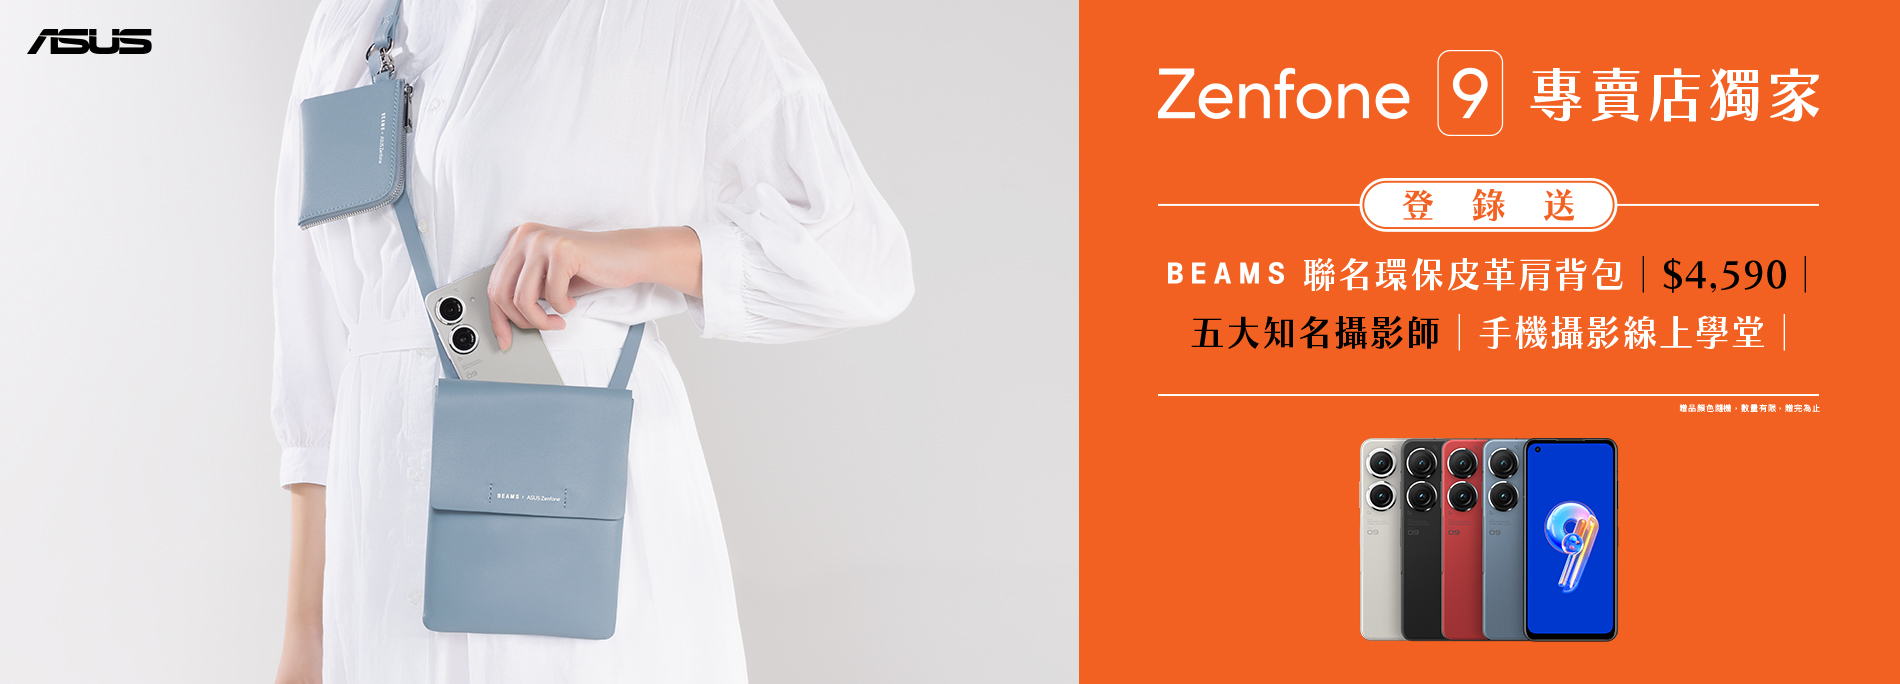 專賣店獨家！購買Zenfone 9登錄送BEAMS聯名環保皮革肩背包及線上攝影學堂